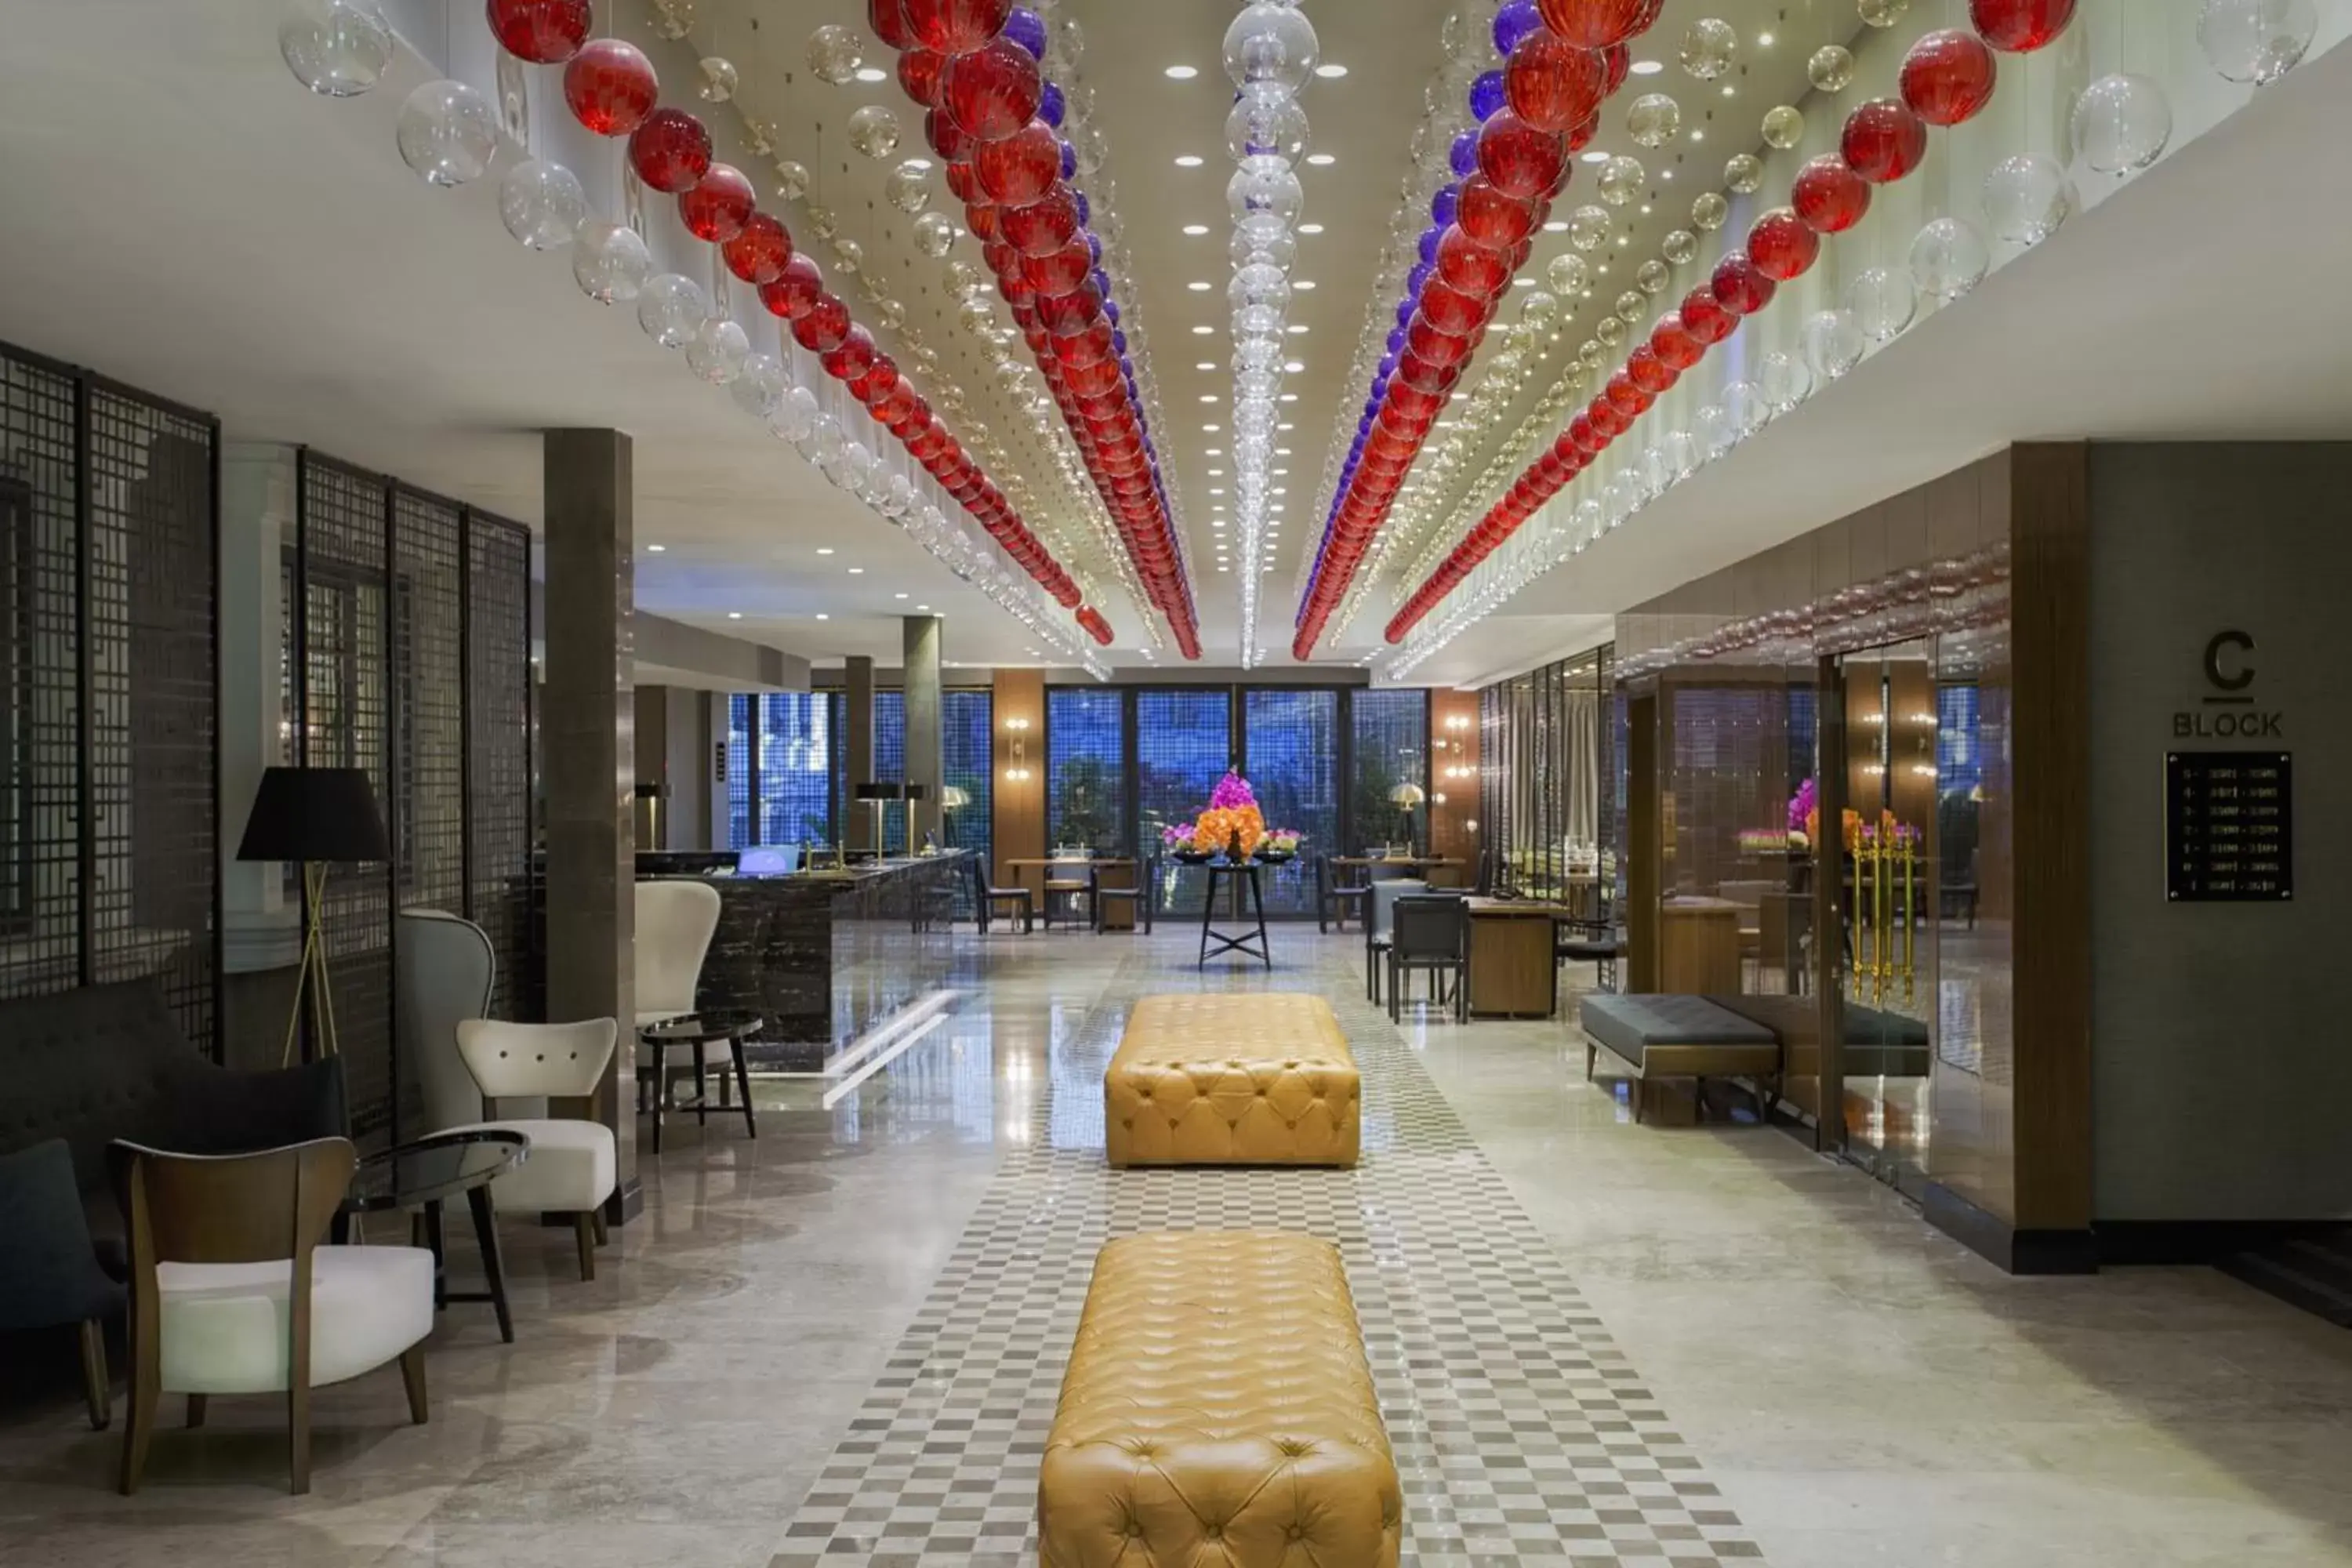 Lobby or reception in Sura Hagia Sophia Hotel